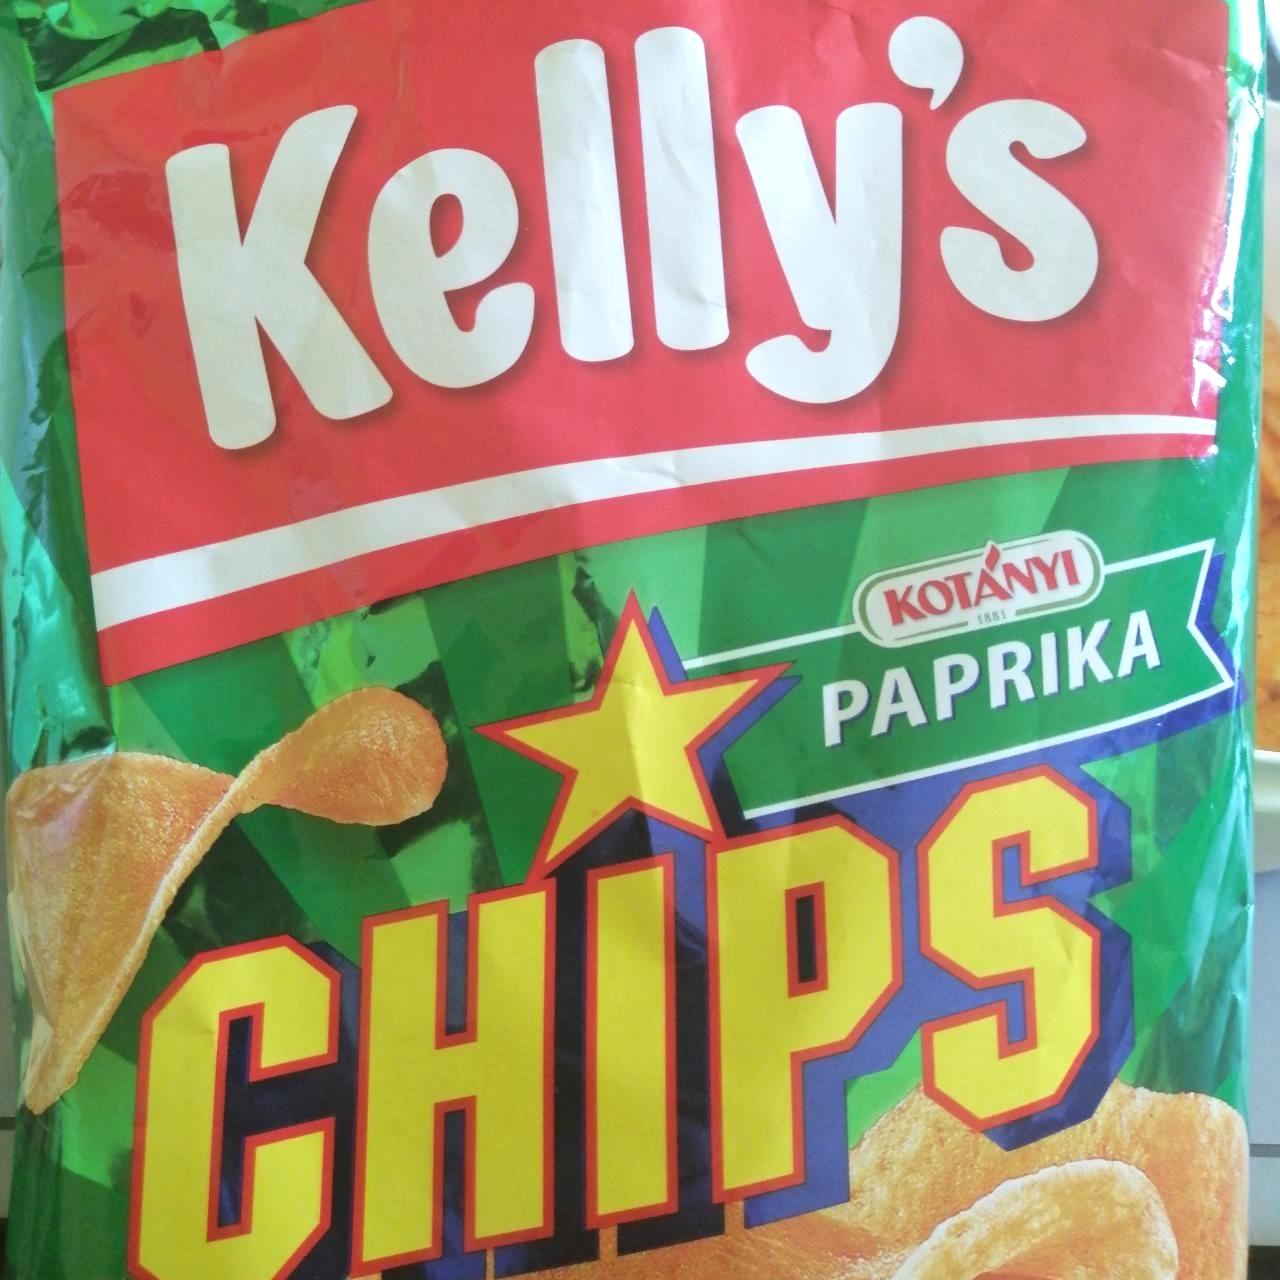 Képek - Paprika chips Kelly's